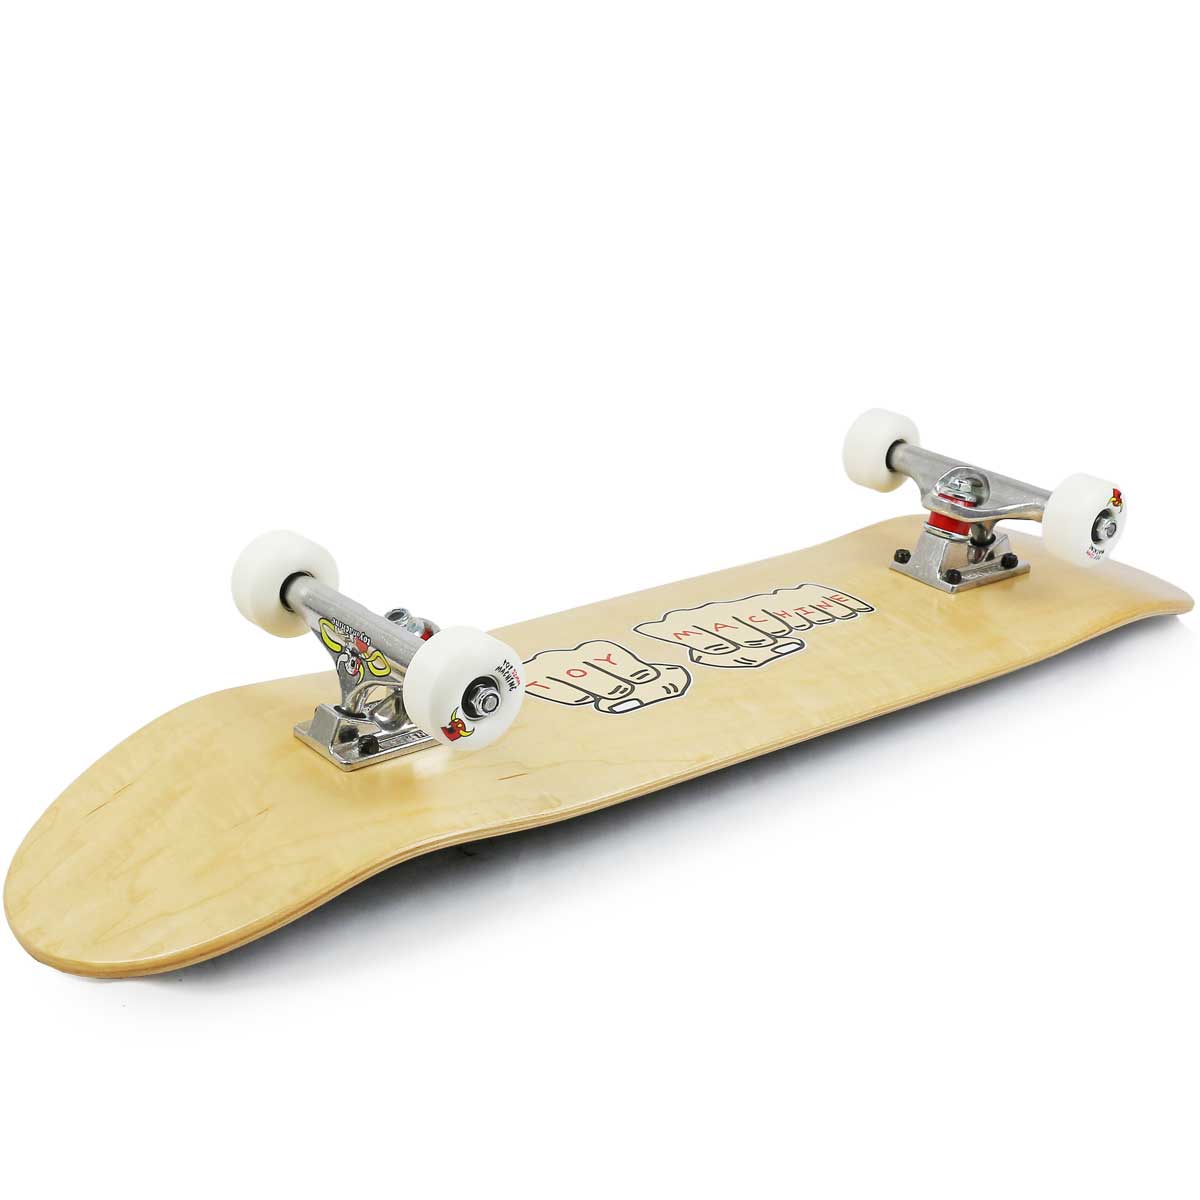 スケボーコンプリート 8.0 8.125 8.25インチ ブランクデッキ インディトイマシーントラック Toymachine Independent  Skateboards Complete スケートボード